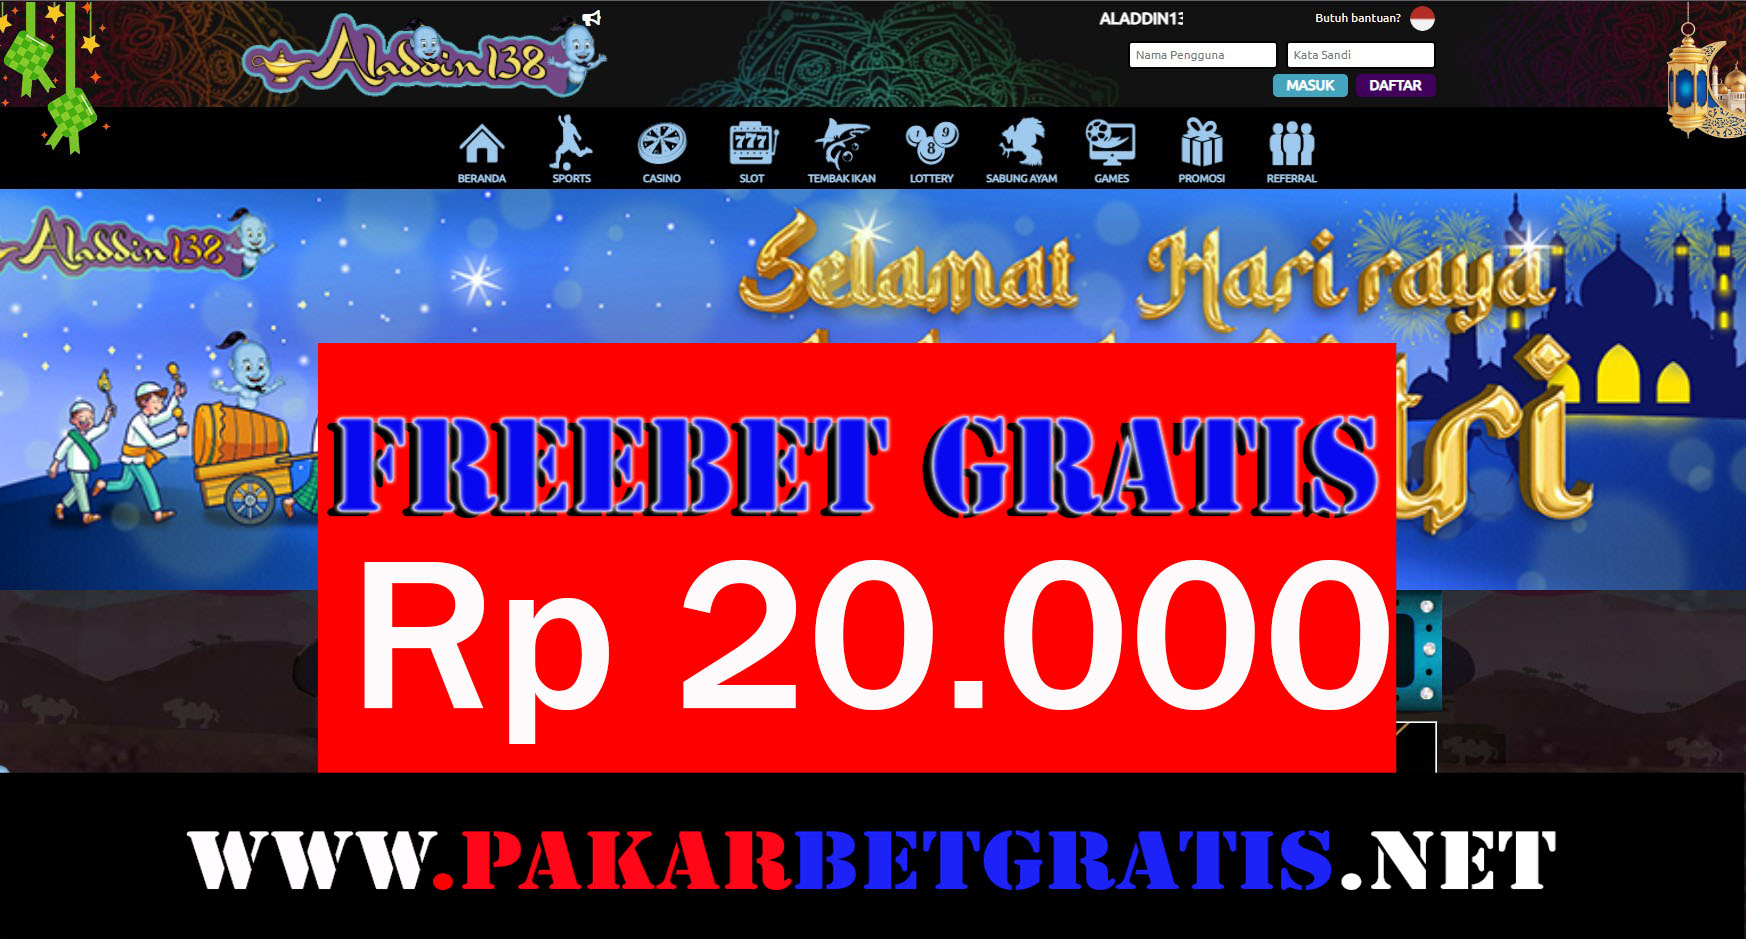 aladdin138 Freebet Gratis Indonesia Rp 20.000 Tanpa Deposit